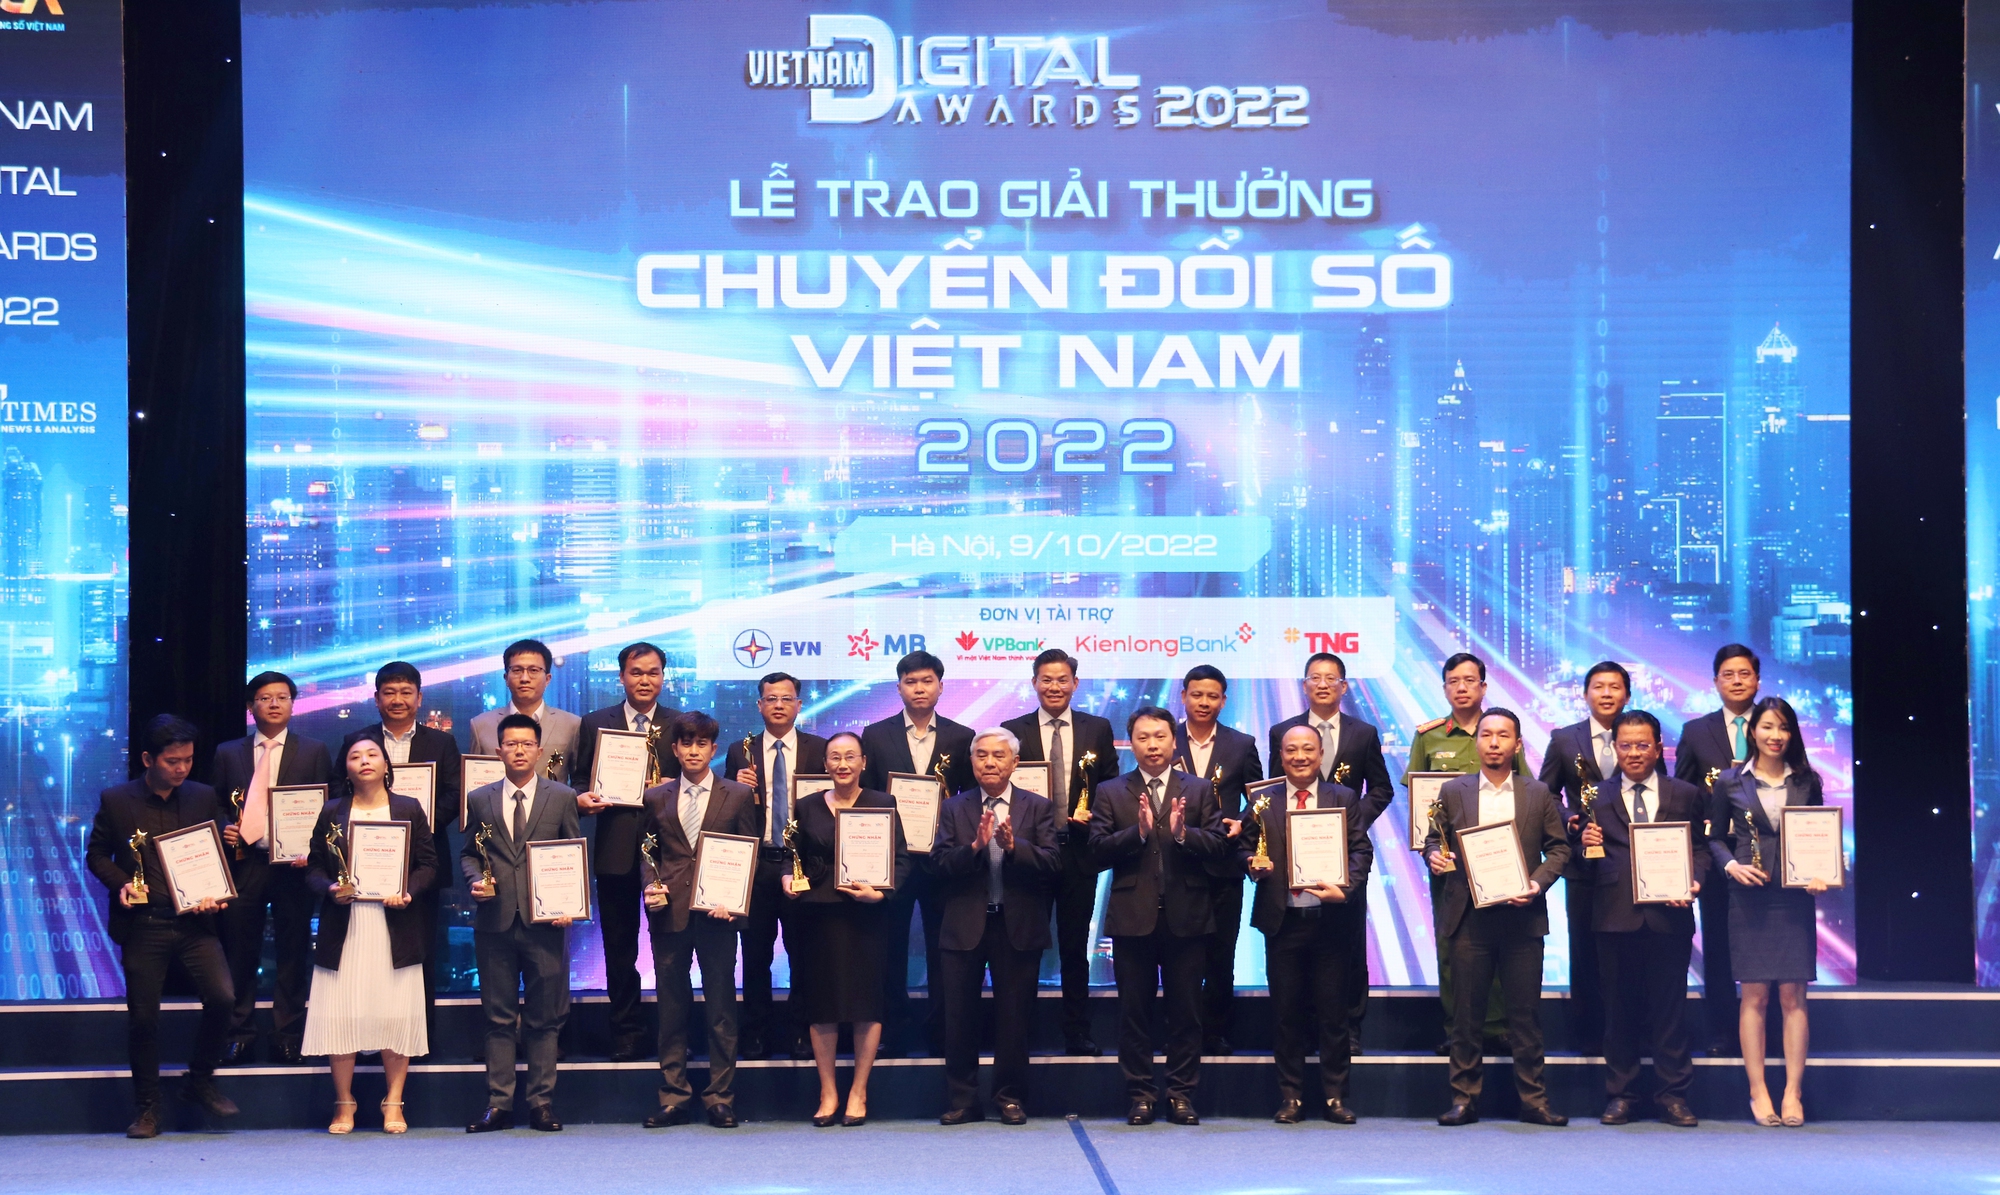 EVN nhận giải thưởng doanh nghiệp chuyển đổi số Việt Nam xuất sắc 2022 - Ảnh 2.